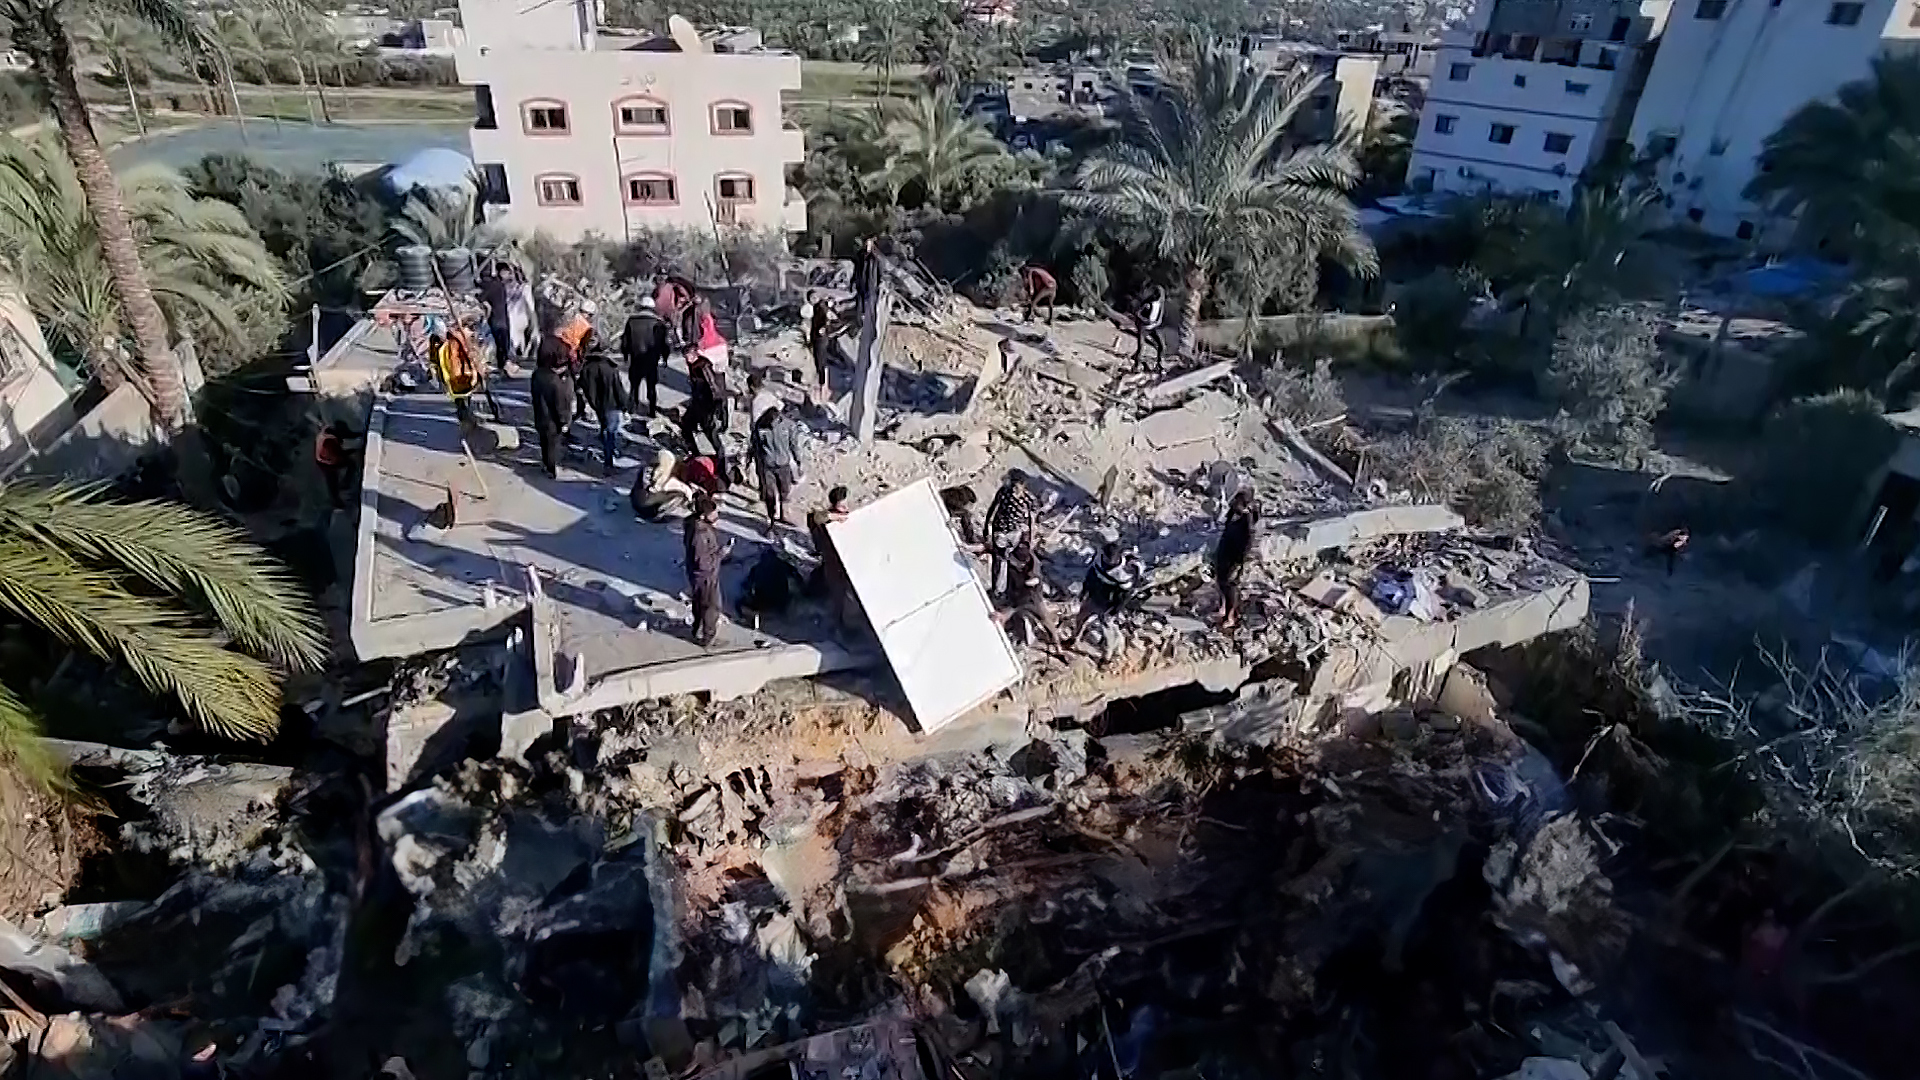 شهداء وجرحى ودمار في قصف إسرائيلي لمنزل بمنطقة الزوايدة وسط غزة | التقارير الإخبارية – البوكس نيوز